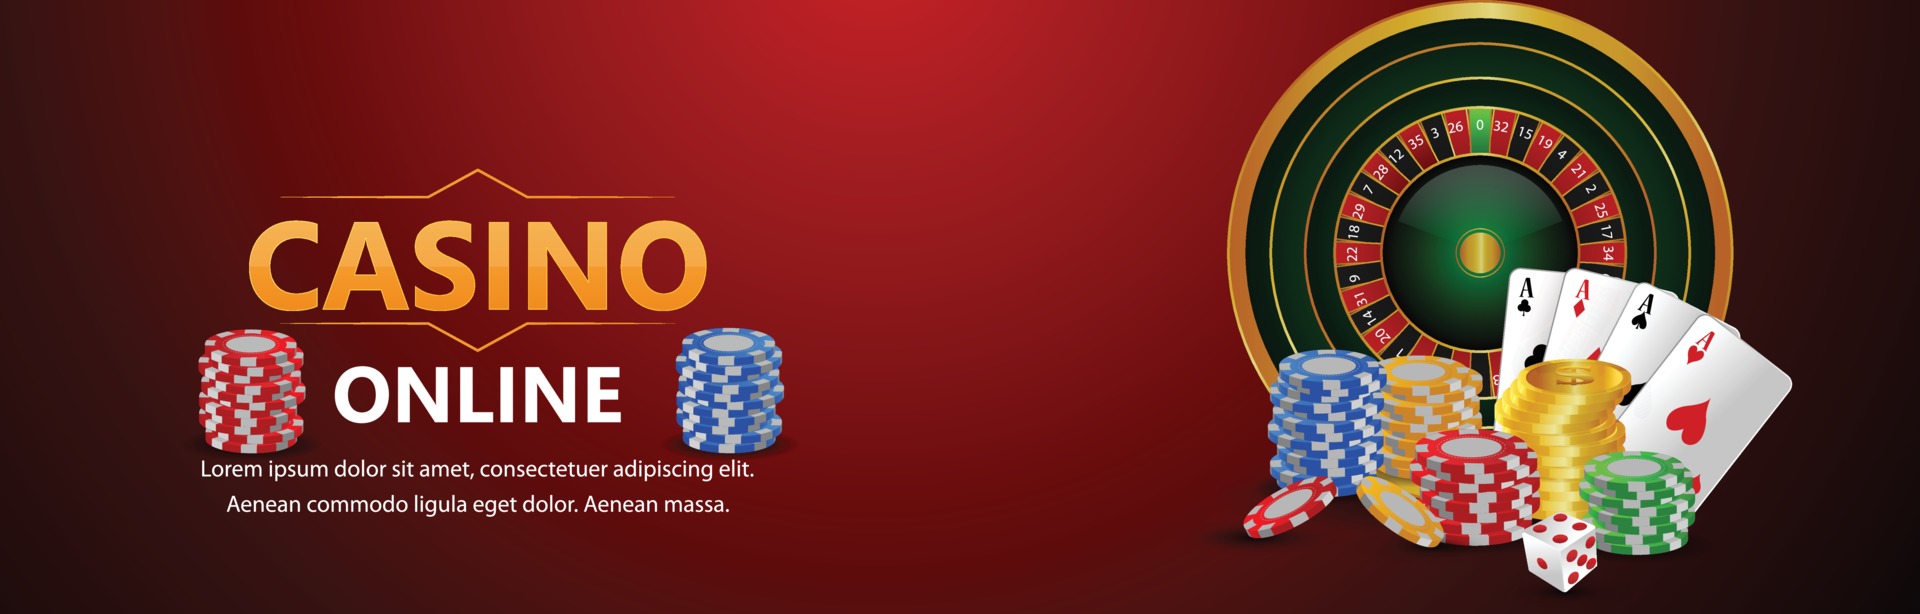 Casino-Banner Vektorgrafiken, Symbole und Grafiken zum kostenlosen Download